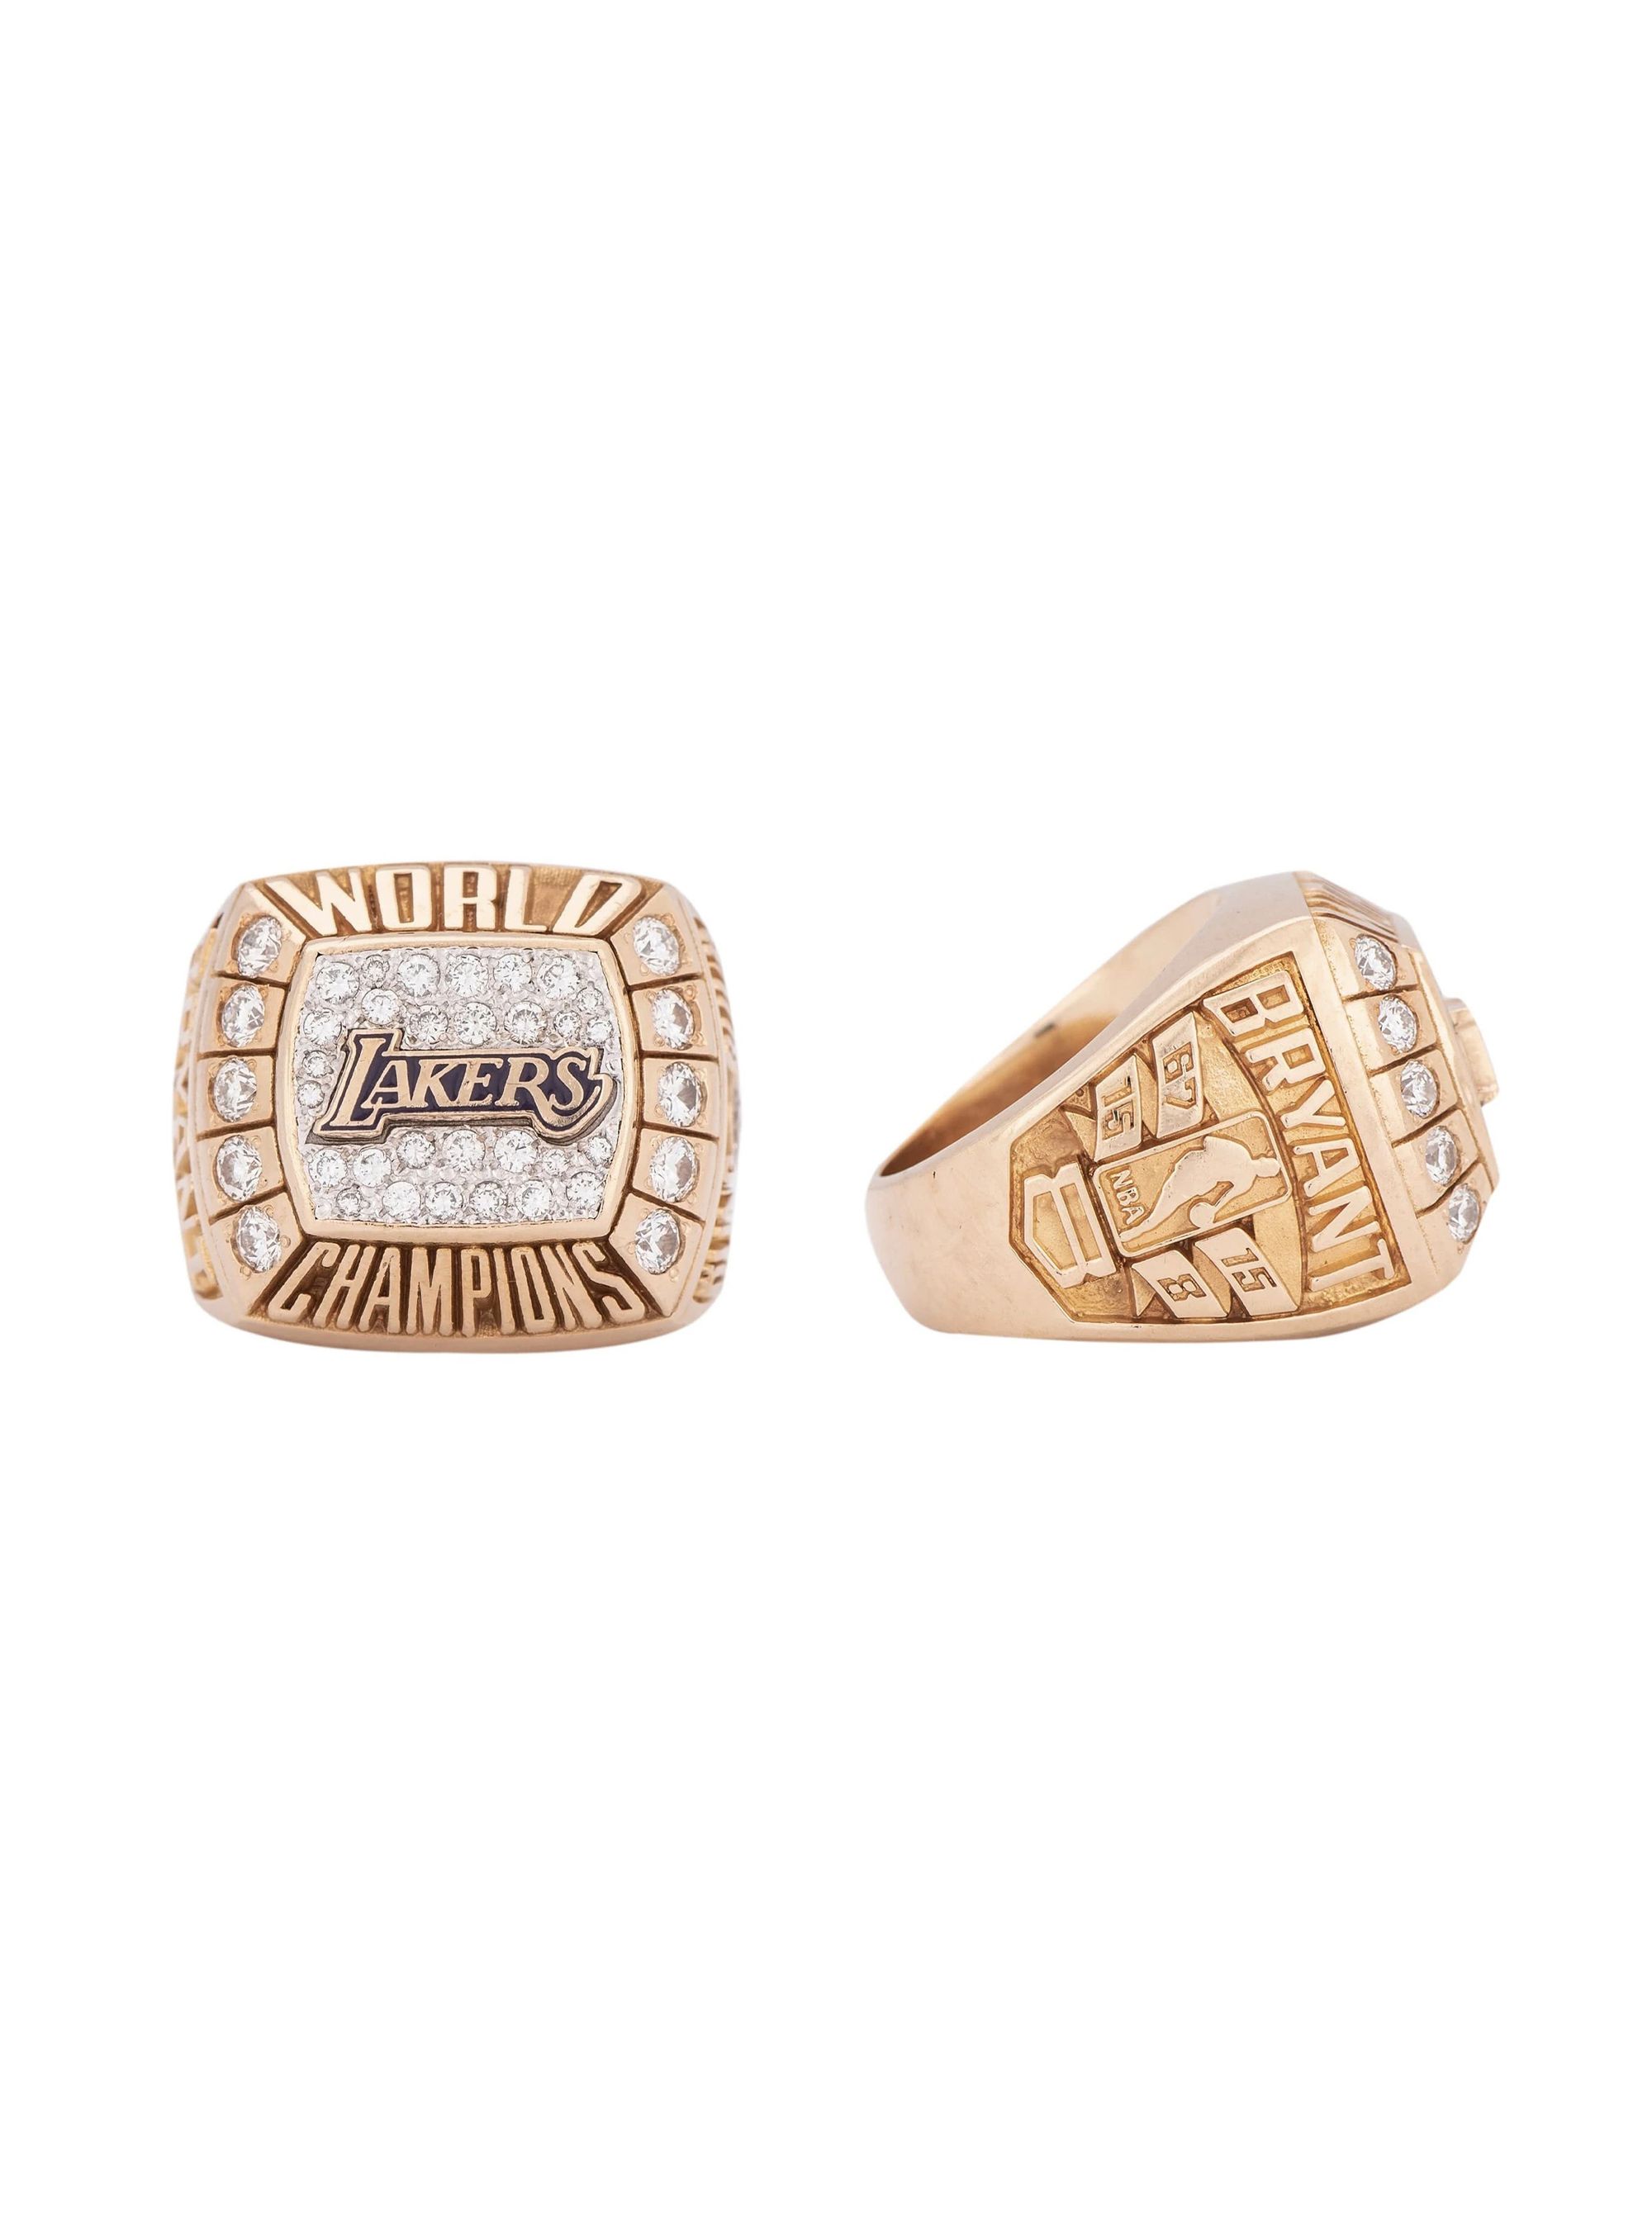 레전드 '코비 브라이언트' NBA 우승 반지 중 역대 최고가로 팔렸다.